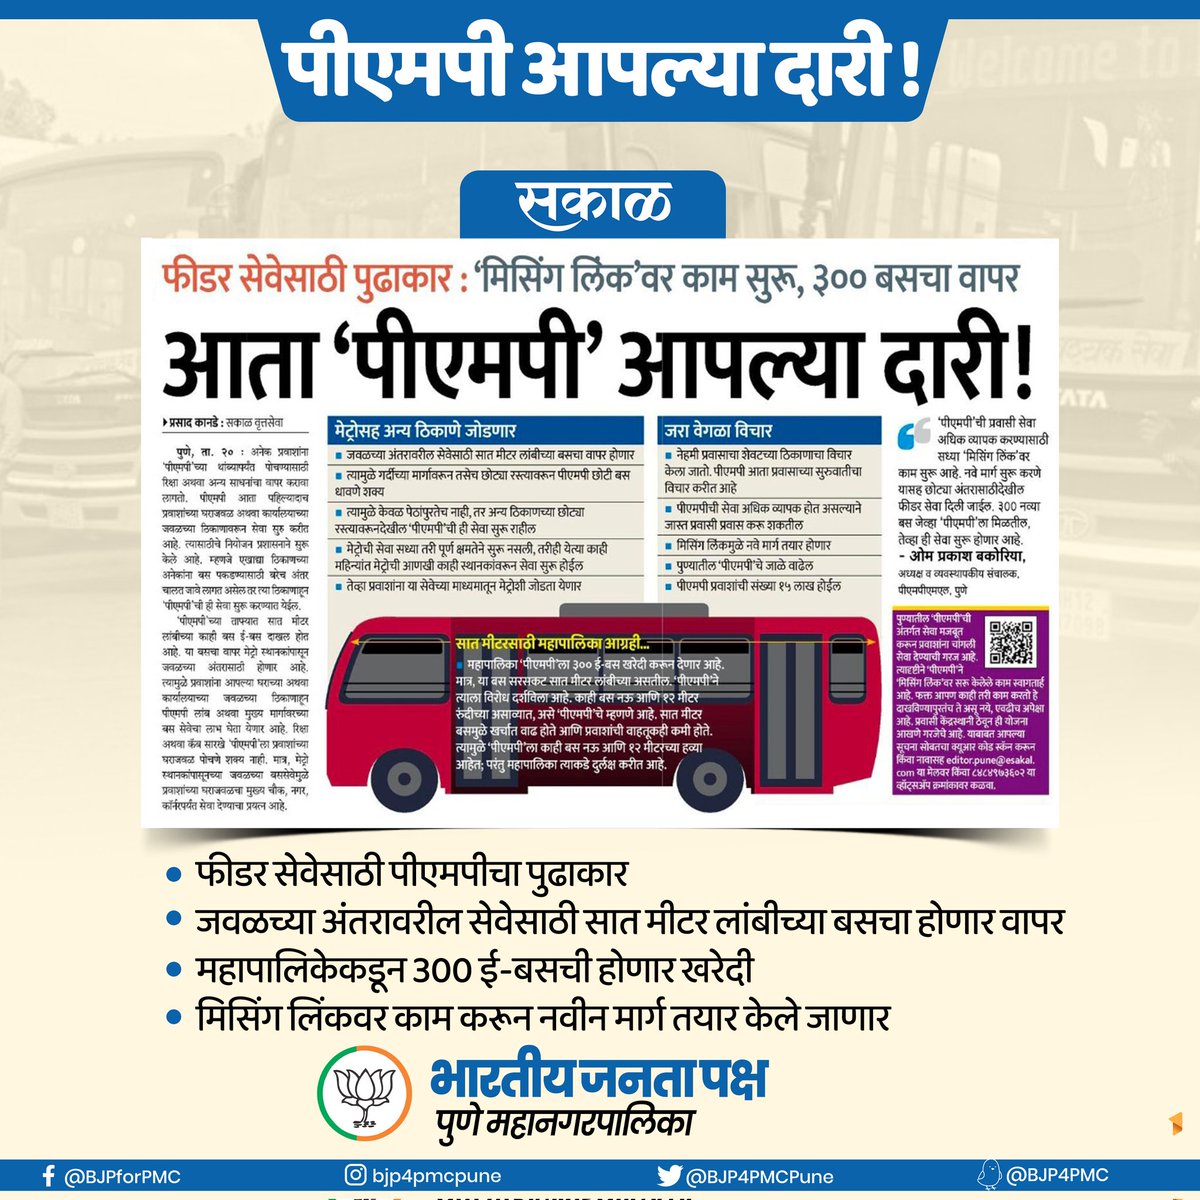 पीएमपी आपल्या दारी : महापालिकेकडून 300 ई-बसची होणार खरेदी

#BJPPMC #BJPFORPMC #BJP4PMC #पुणे #Pune #PMPML #आपल्यादारी